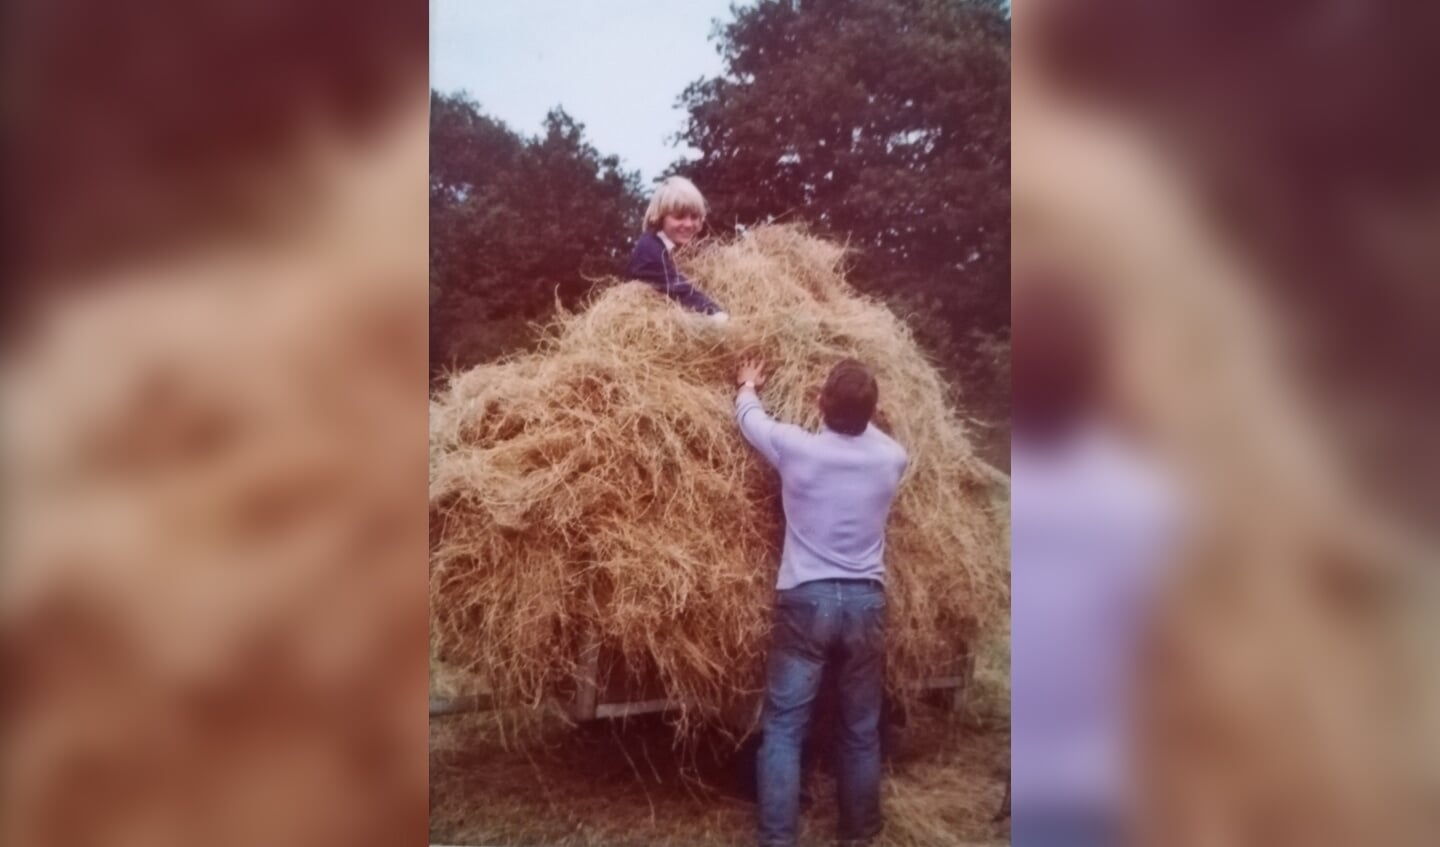 'Ik wilde vroeger boerin worden. Hier ben ik aan het hooien met mijn vader in Handel, Noord-Brabant. Het verlangen om buiten te zijn op de boerderij is er nog steeds; het raakt aan mijn ziel. Ik heb me als tiener opgegeven voor de landbouwschool, maar daa